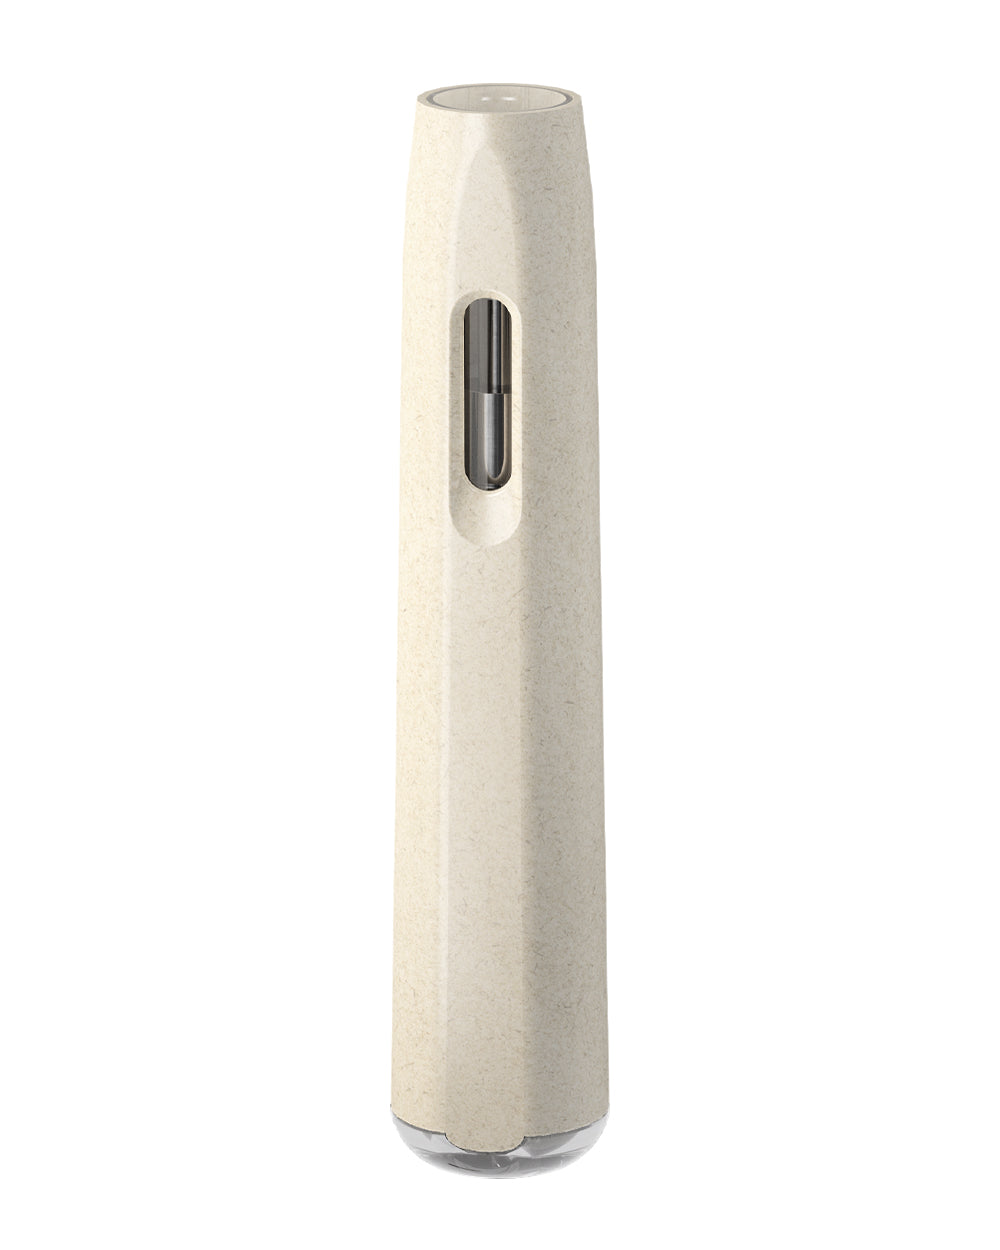 AVD White Hemp Plastic Blend Rechargeable Stem Disposable Vape Pen w/ Clear Vortex Mouthpiece | 1mL - 220 mAh | Sample - 2